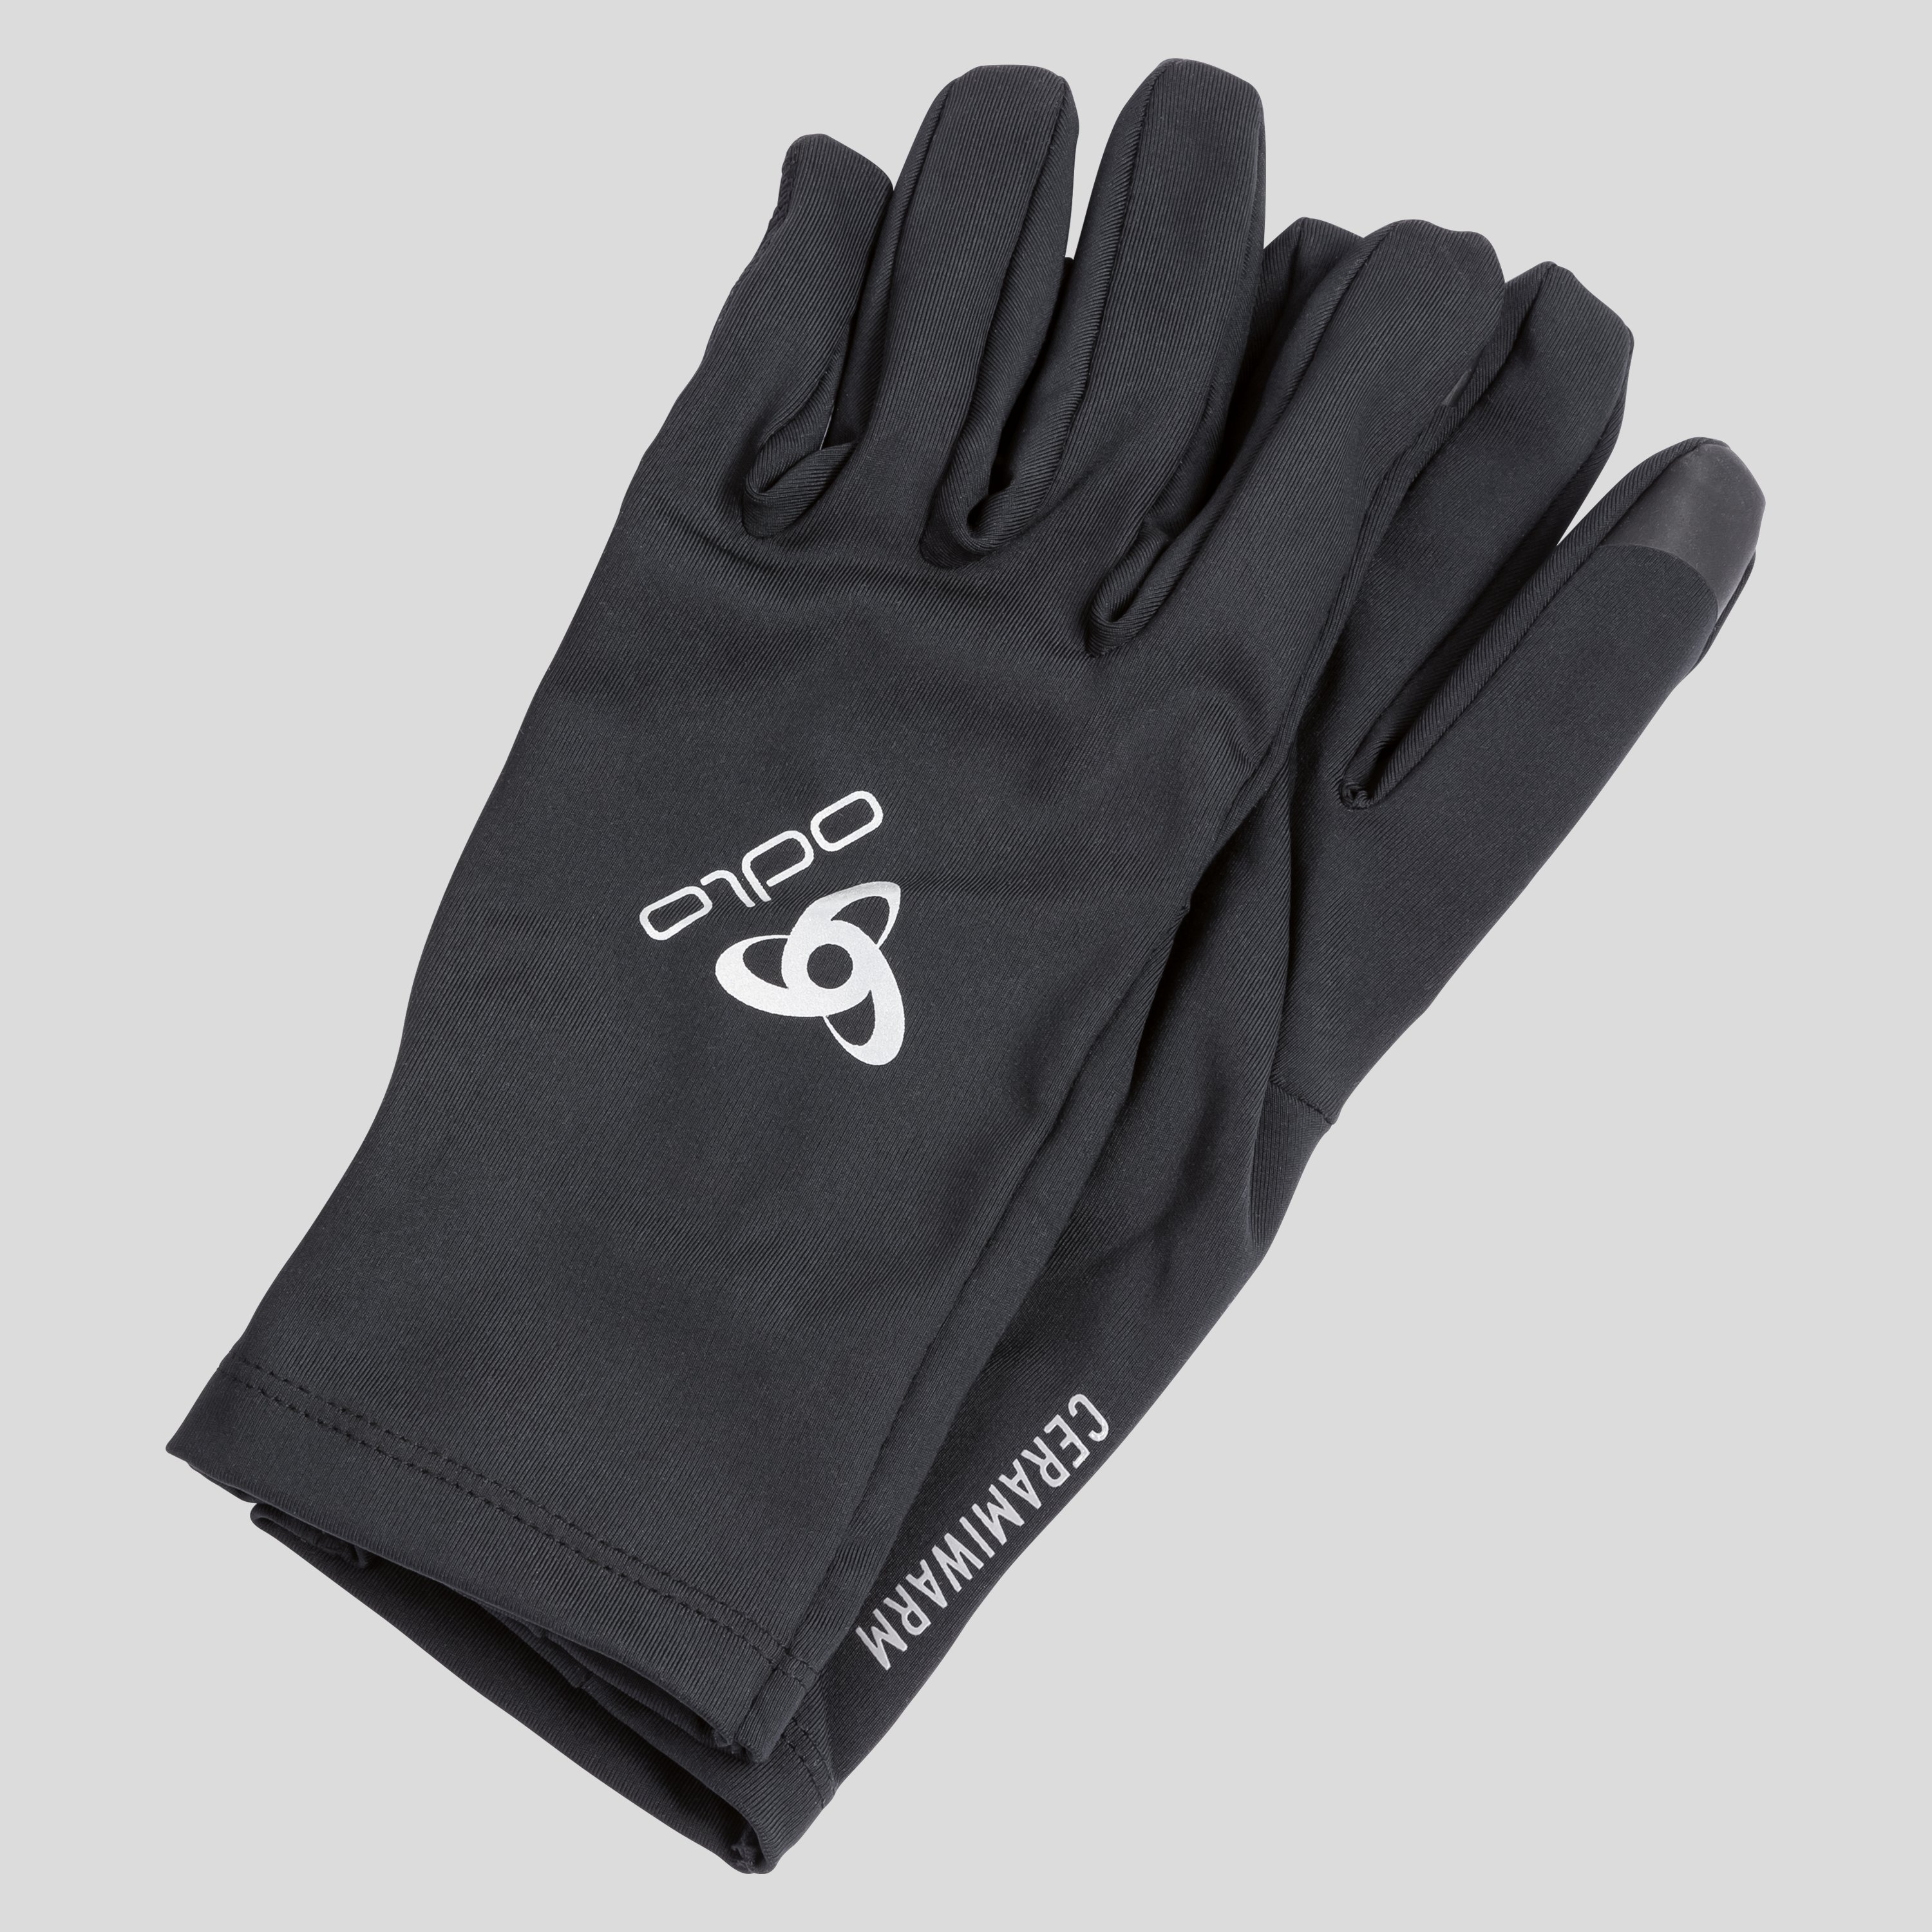 ODLO Ceramiwarm Light Handschuhe, XS, schwarz